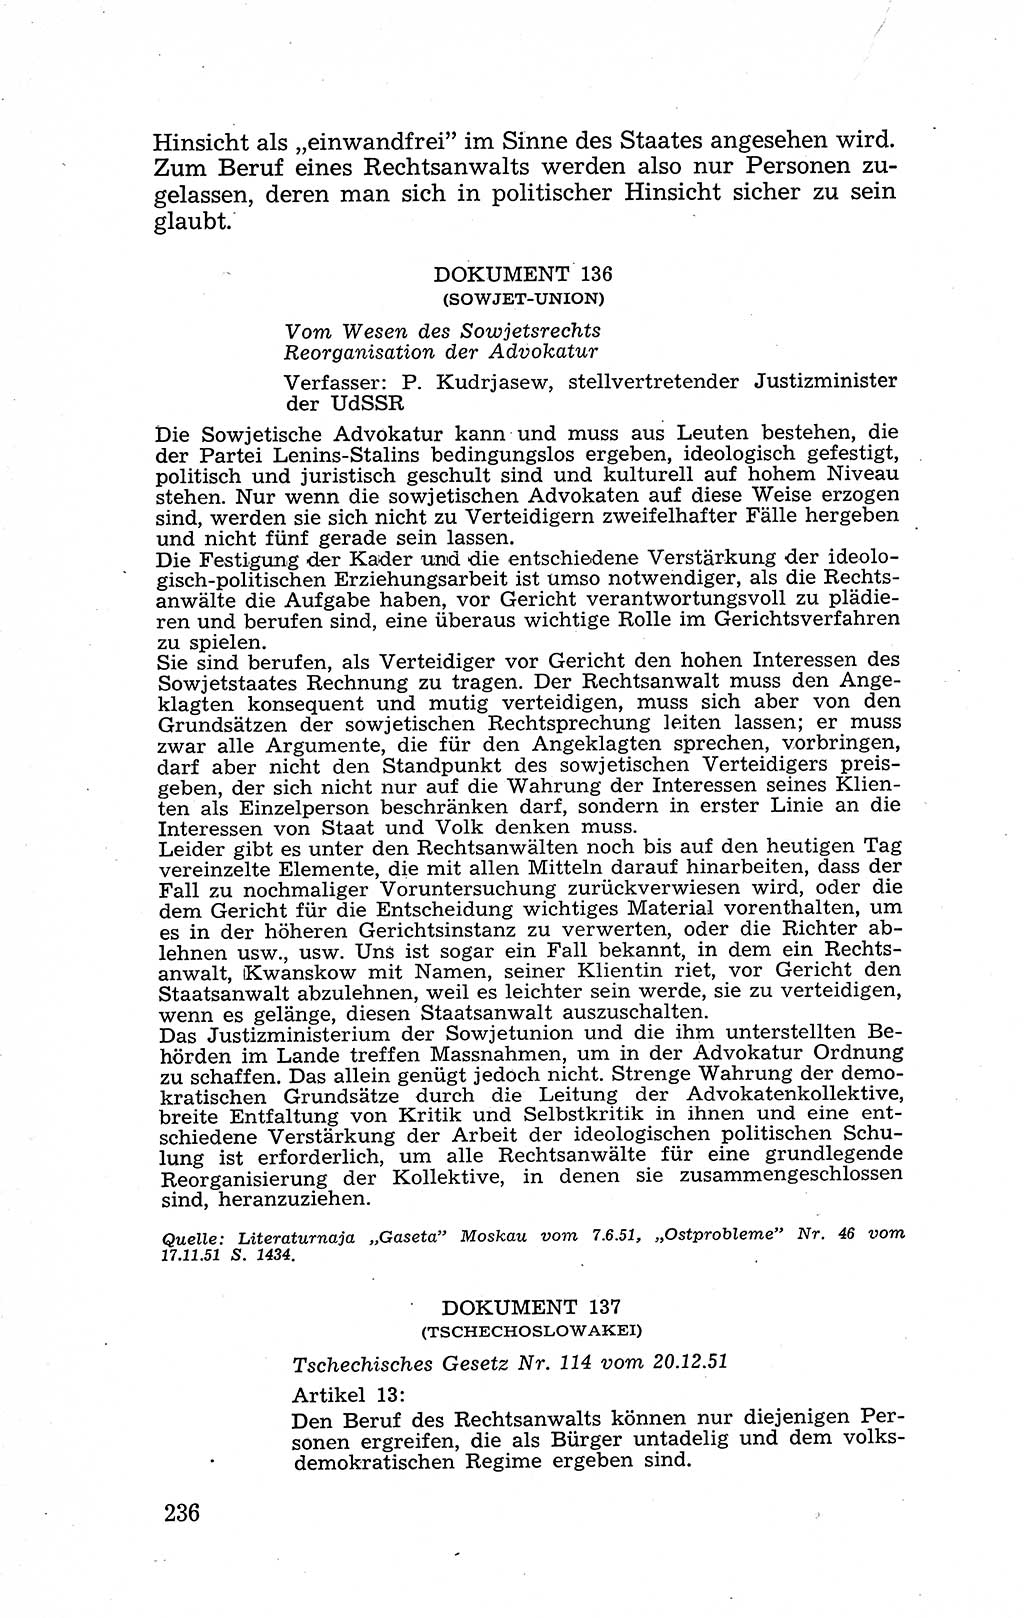 Recht in Fesseln, Dokumente, Internationale Juristen-Kommission [Bundesrepublik Deutschland (BRD)] 1955, Seite 236 (R. Dok. IJK BRD 1955, S. 236)